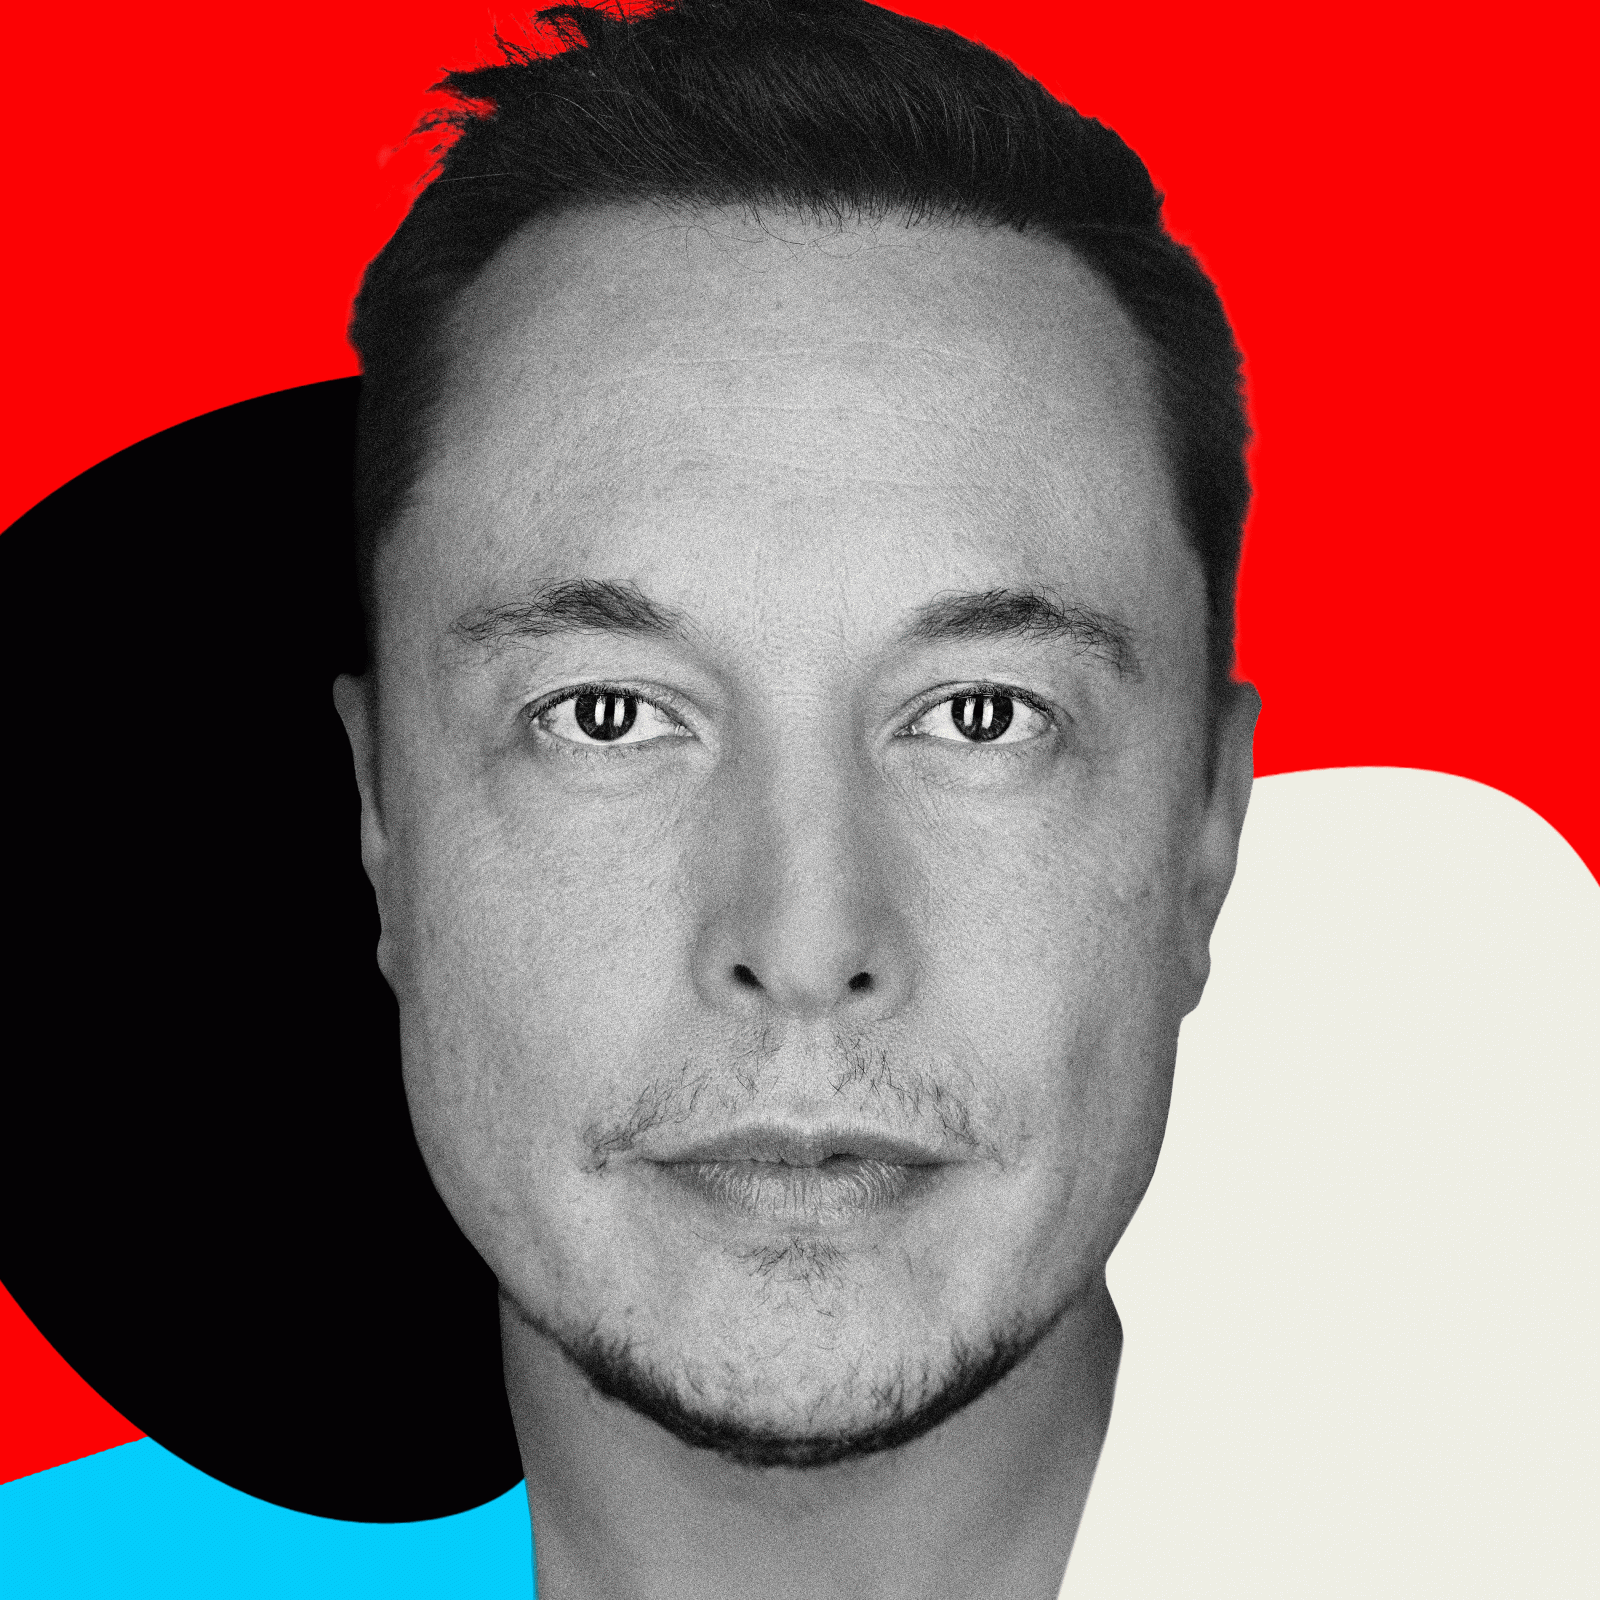 La fortuna de Elon Musk y estos 'billionaires' cayeron mientras